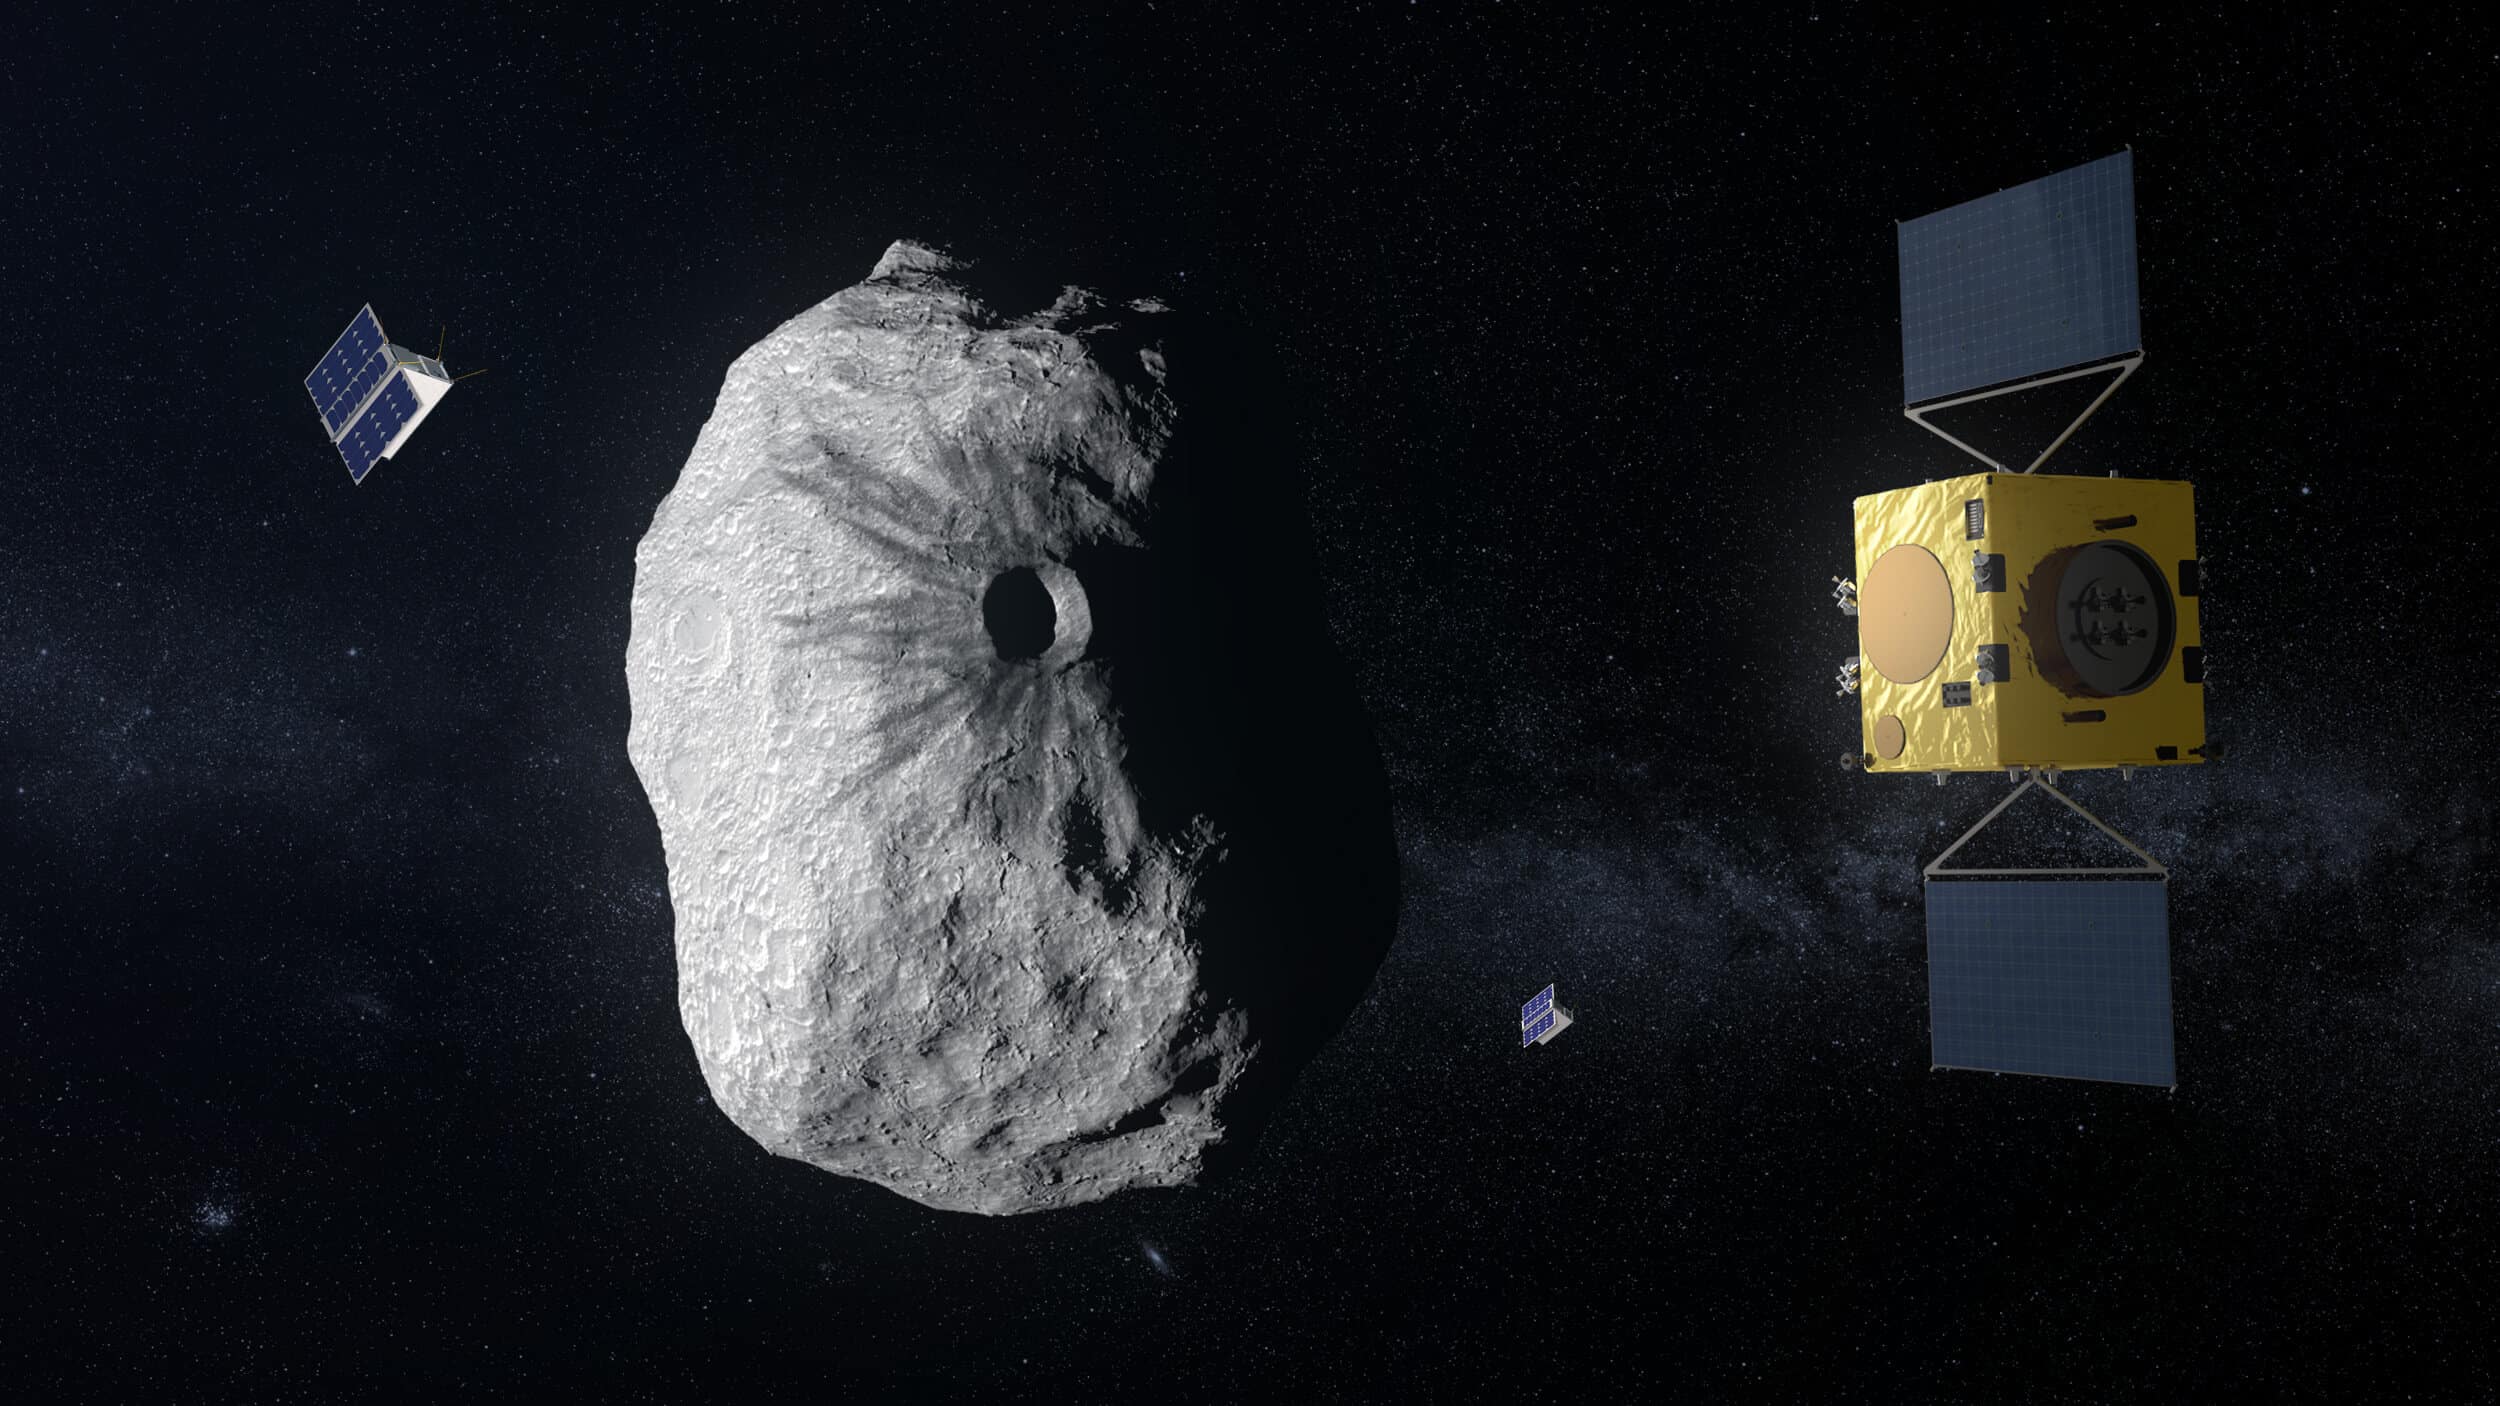 אילוסטרציה של המכתש שנוצר בעת ההתנגשות בין החללית DART לבין האסטרואיד דימורפוס. ברקע: החללית HERA האירופית והננו-לוויינים (CubeSats) שלה במחקר המשך.
קרדיט: ESA  Science Office